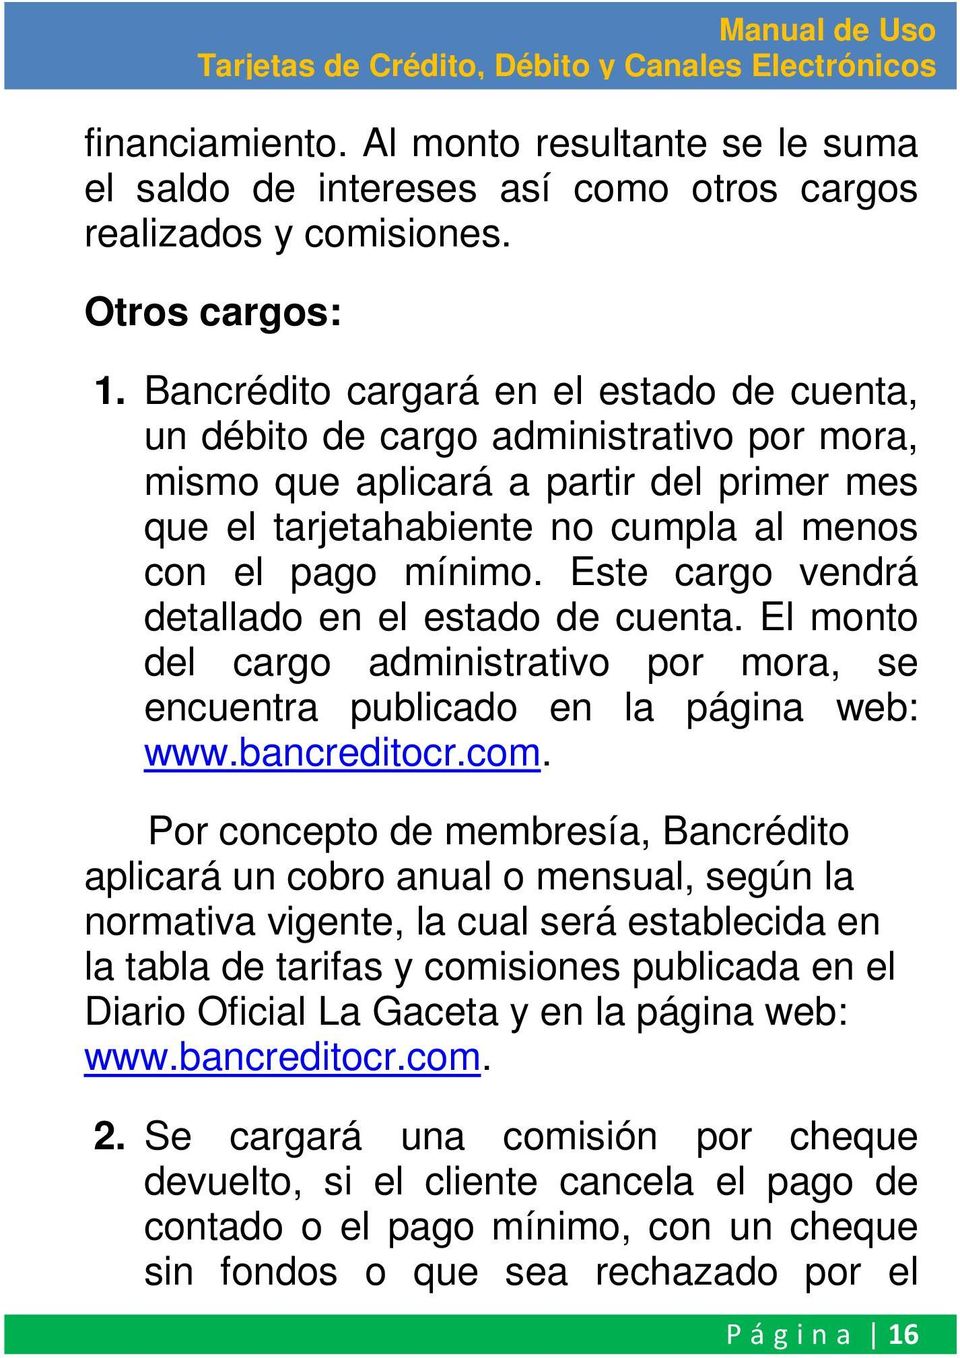 Este cargo vendrá detallado en el estado de cuenta. El monto del cargo administrativo por mora, se encuentra publicado en la página web: www.bancreditocr.com.